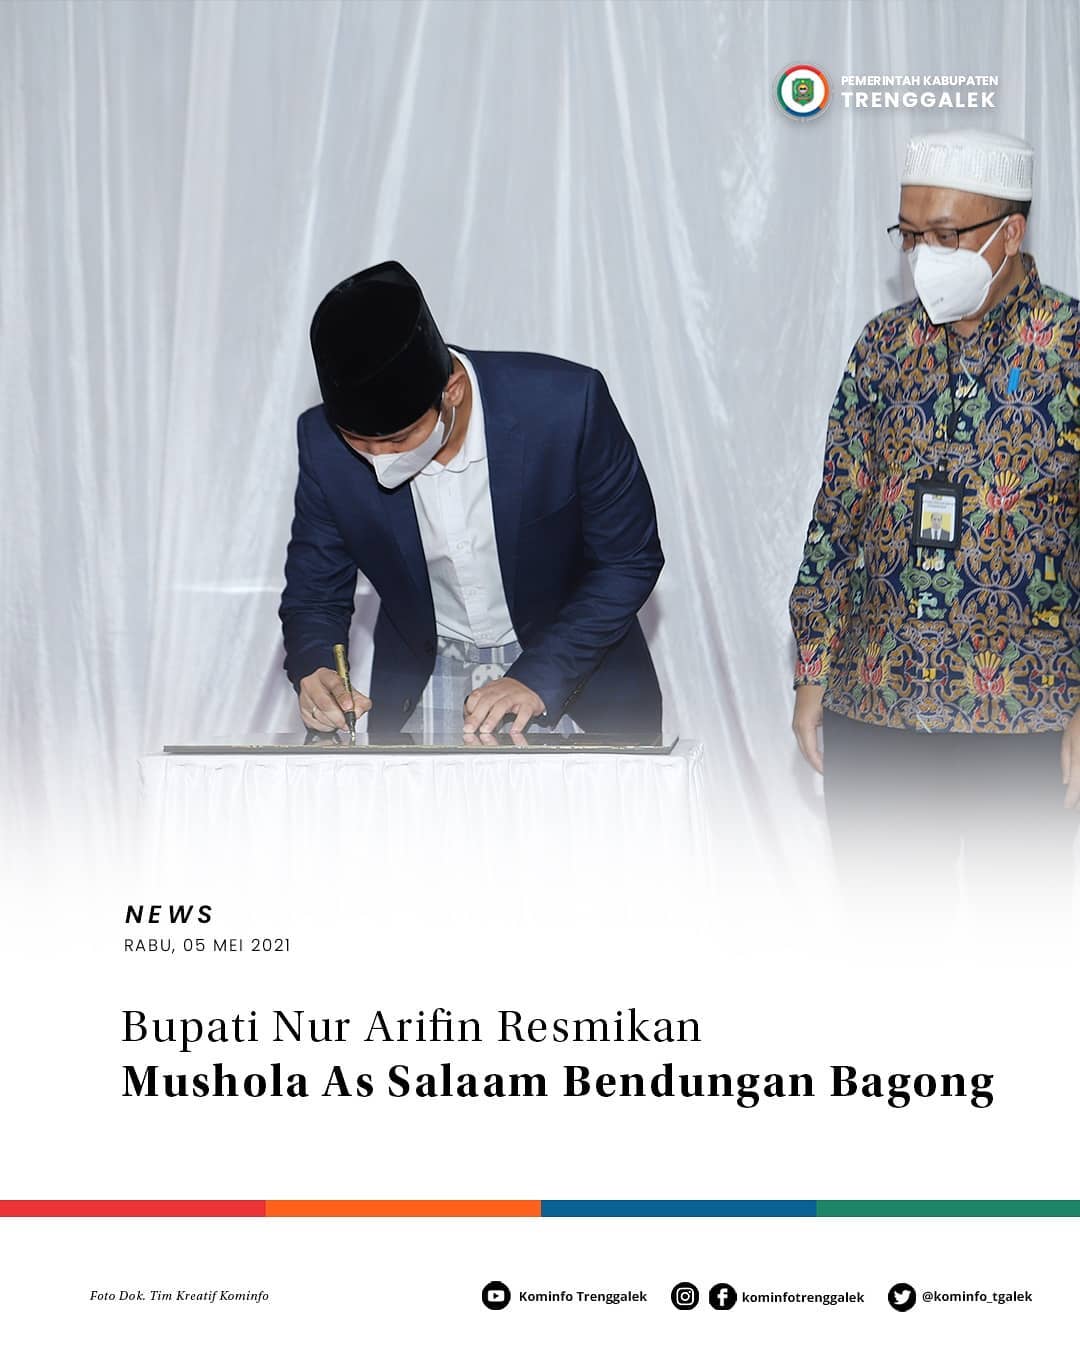 Bupati Nur Arifin Resmikan Mushola As Salaam Bendungan Bagong